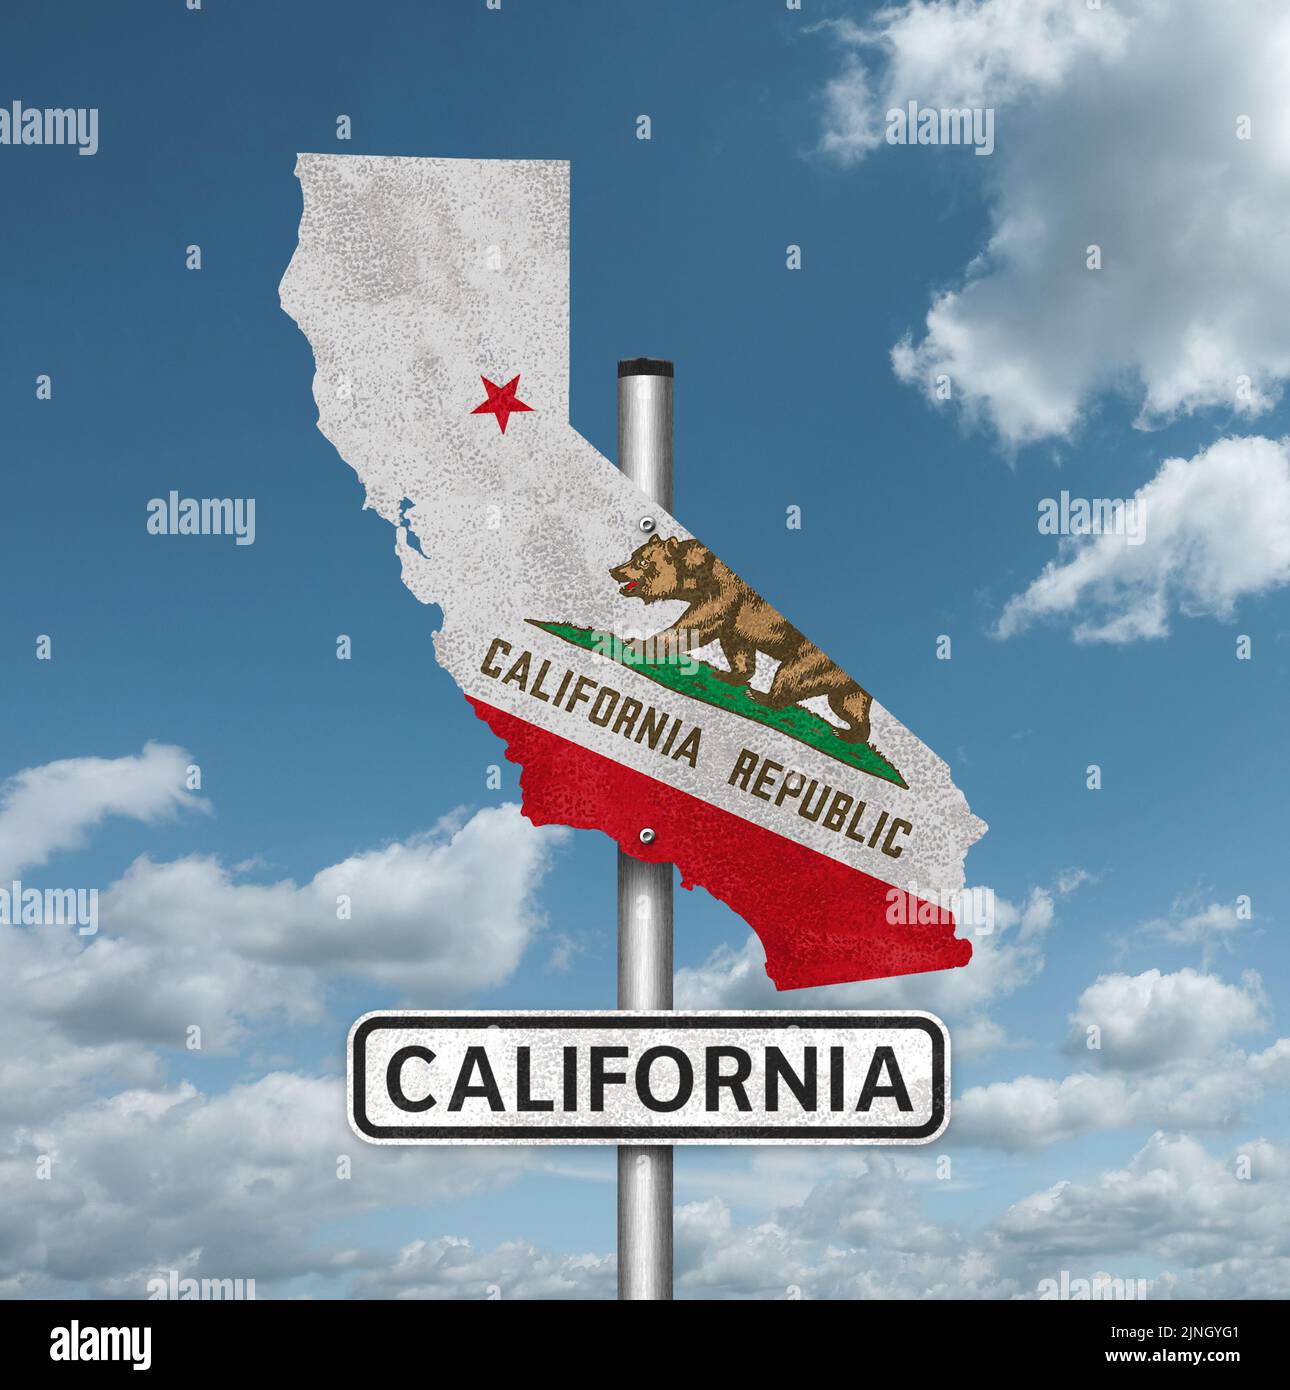 Señal de carretera del estado de California - con bandera y mapa Foto de stock